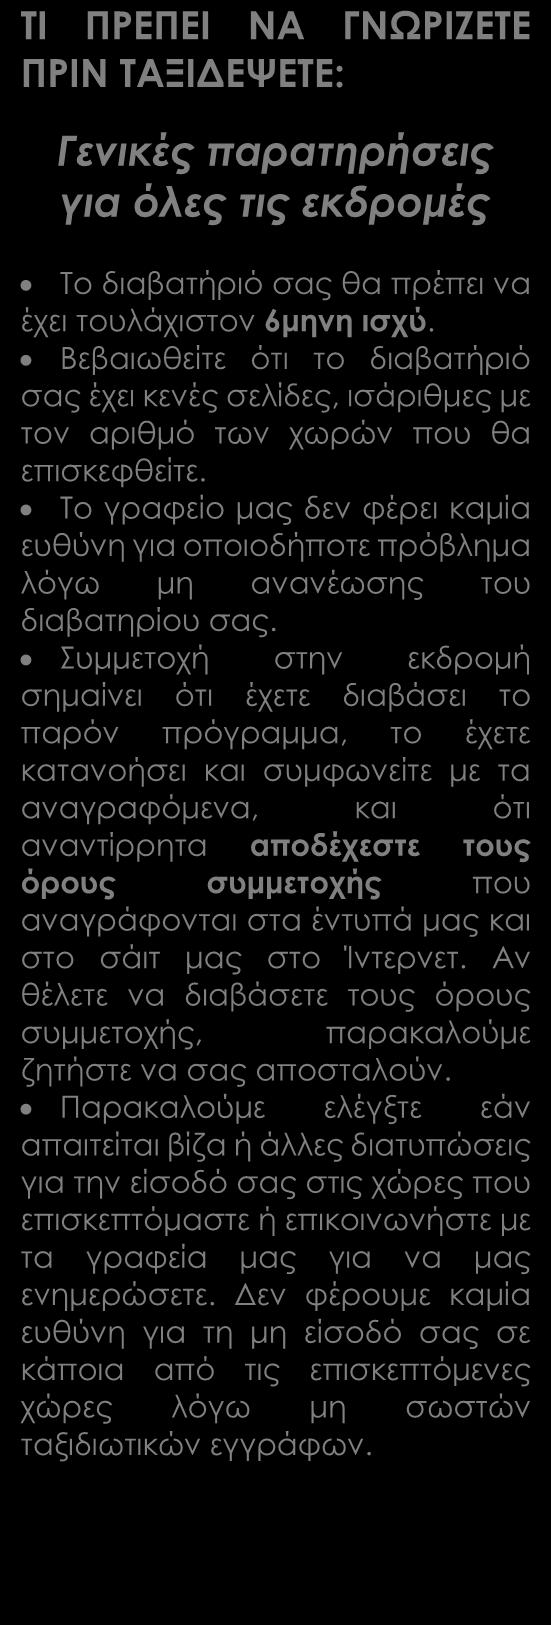 Μεταφορές, περιηγήσεις, ξεναγήσεις, όπως αναγράφονται στο πρόγραμμα Τοπικός ξεναγός, Έλληνας αρχηγός Ασφάλεια αστικής ευθύνης Δωρεάν ταξιδιωτικός οδηγός-βιβλίο στα ελληνικά Versus Travel.